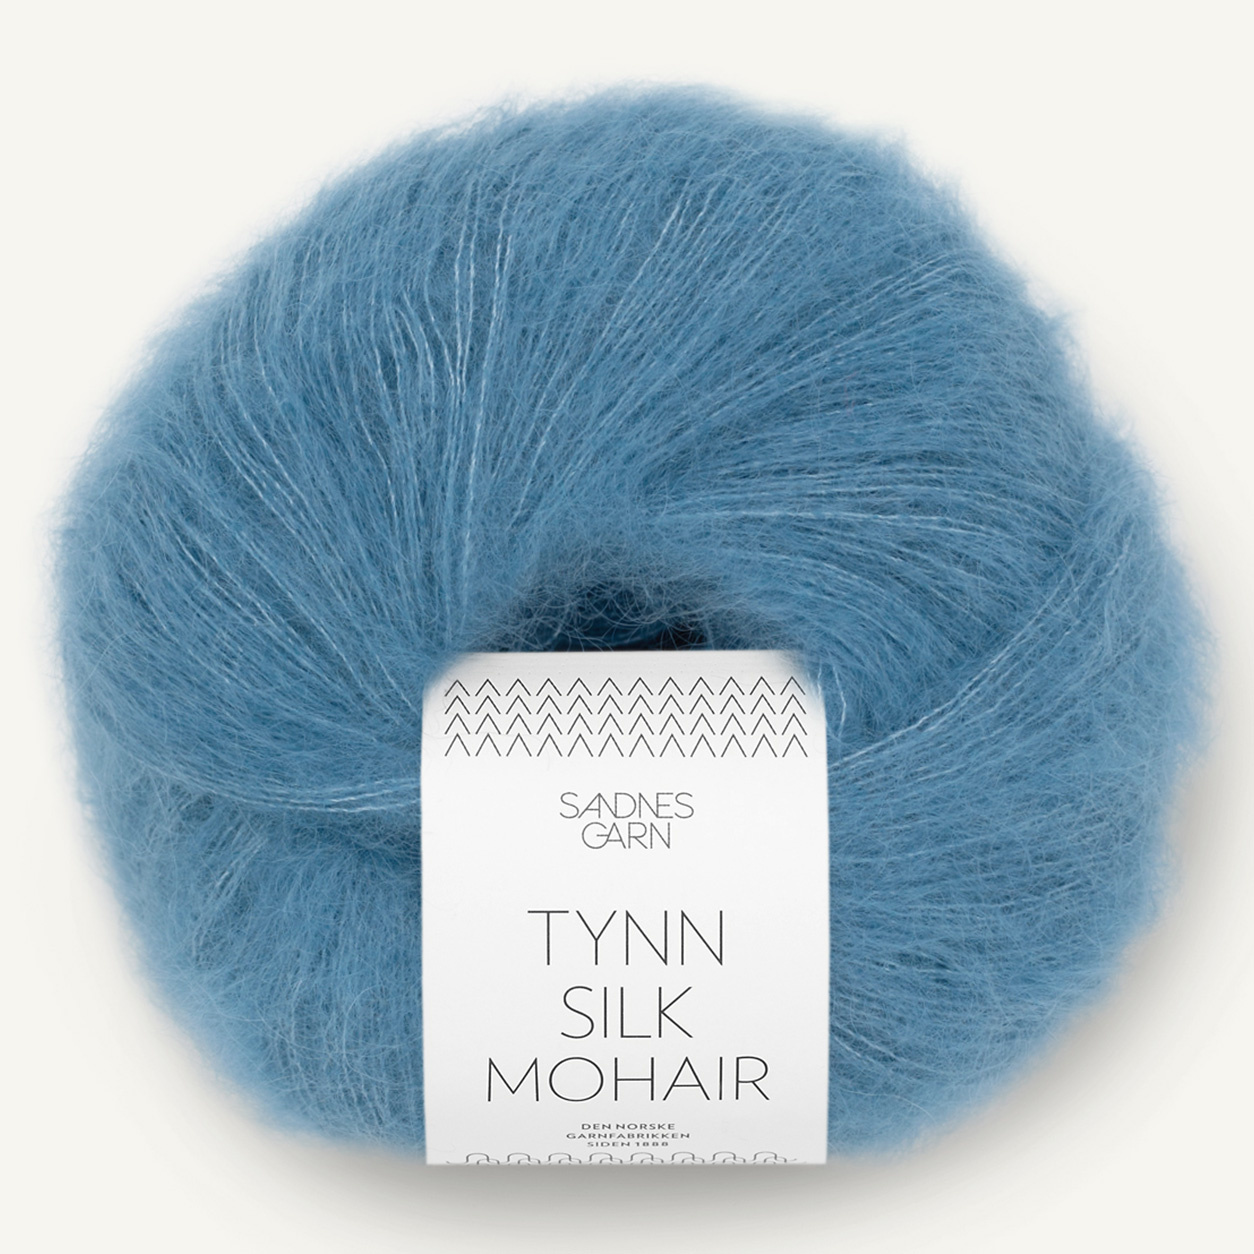 Sandnes Tynn Silk Mohair, 6042, Dunkles Himmelblau